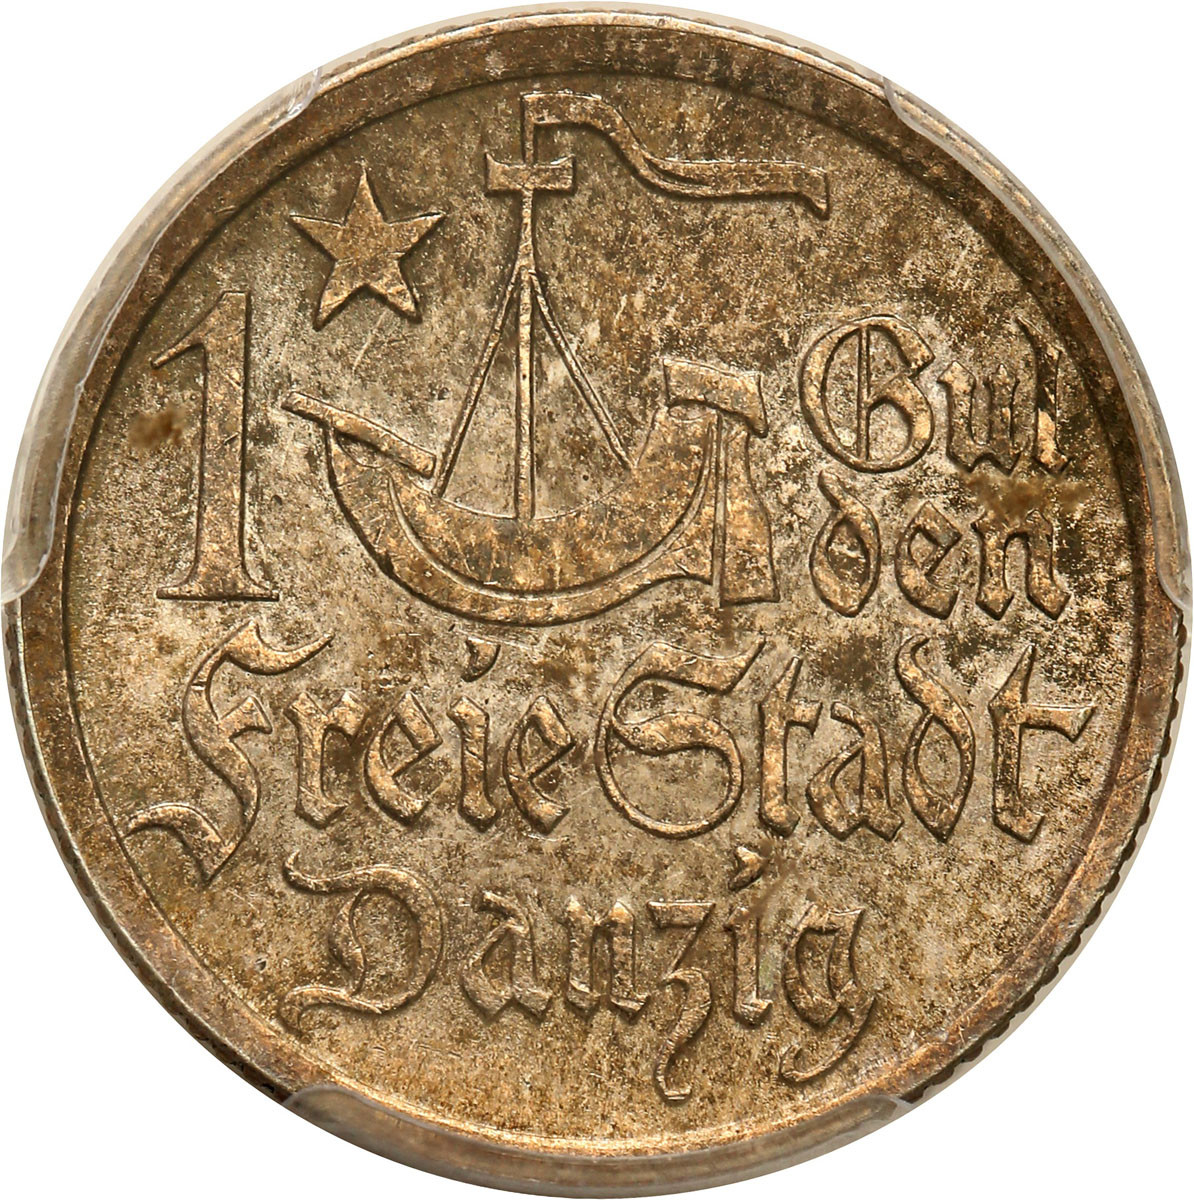 Wolne Miasto Gdańsk/Danzig. 1 Gulden 1923 PCGS MS64 - PIĘKNY